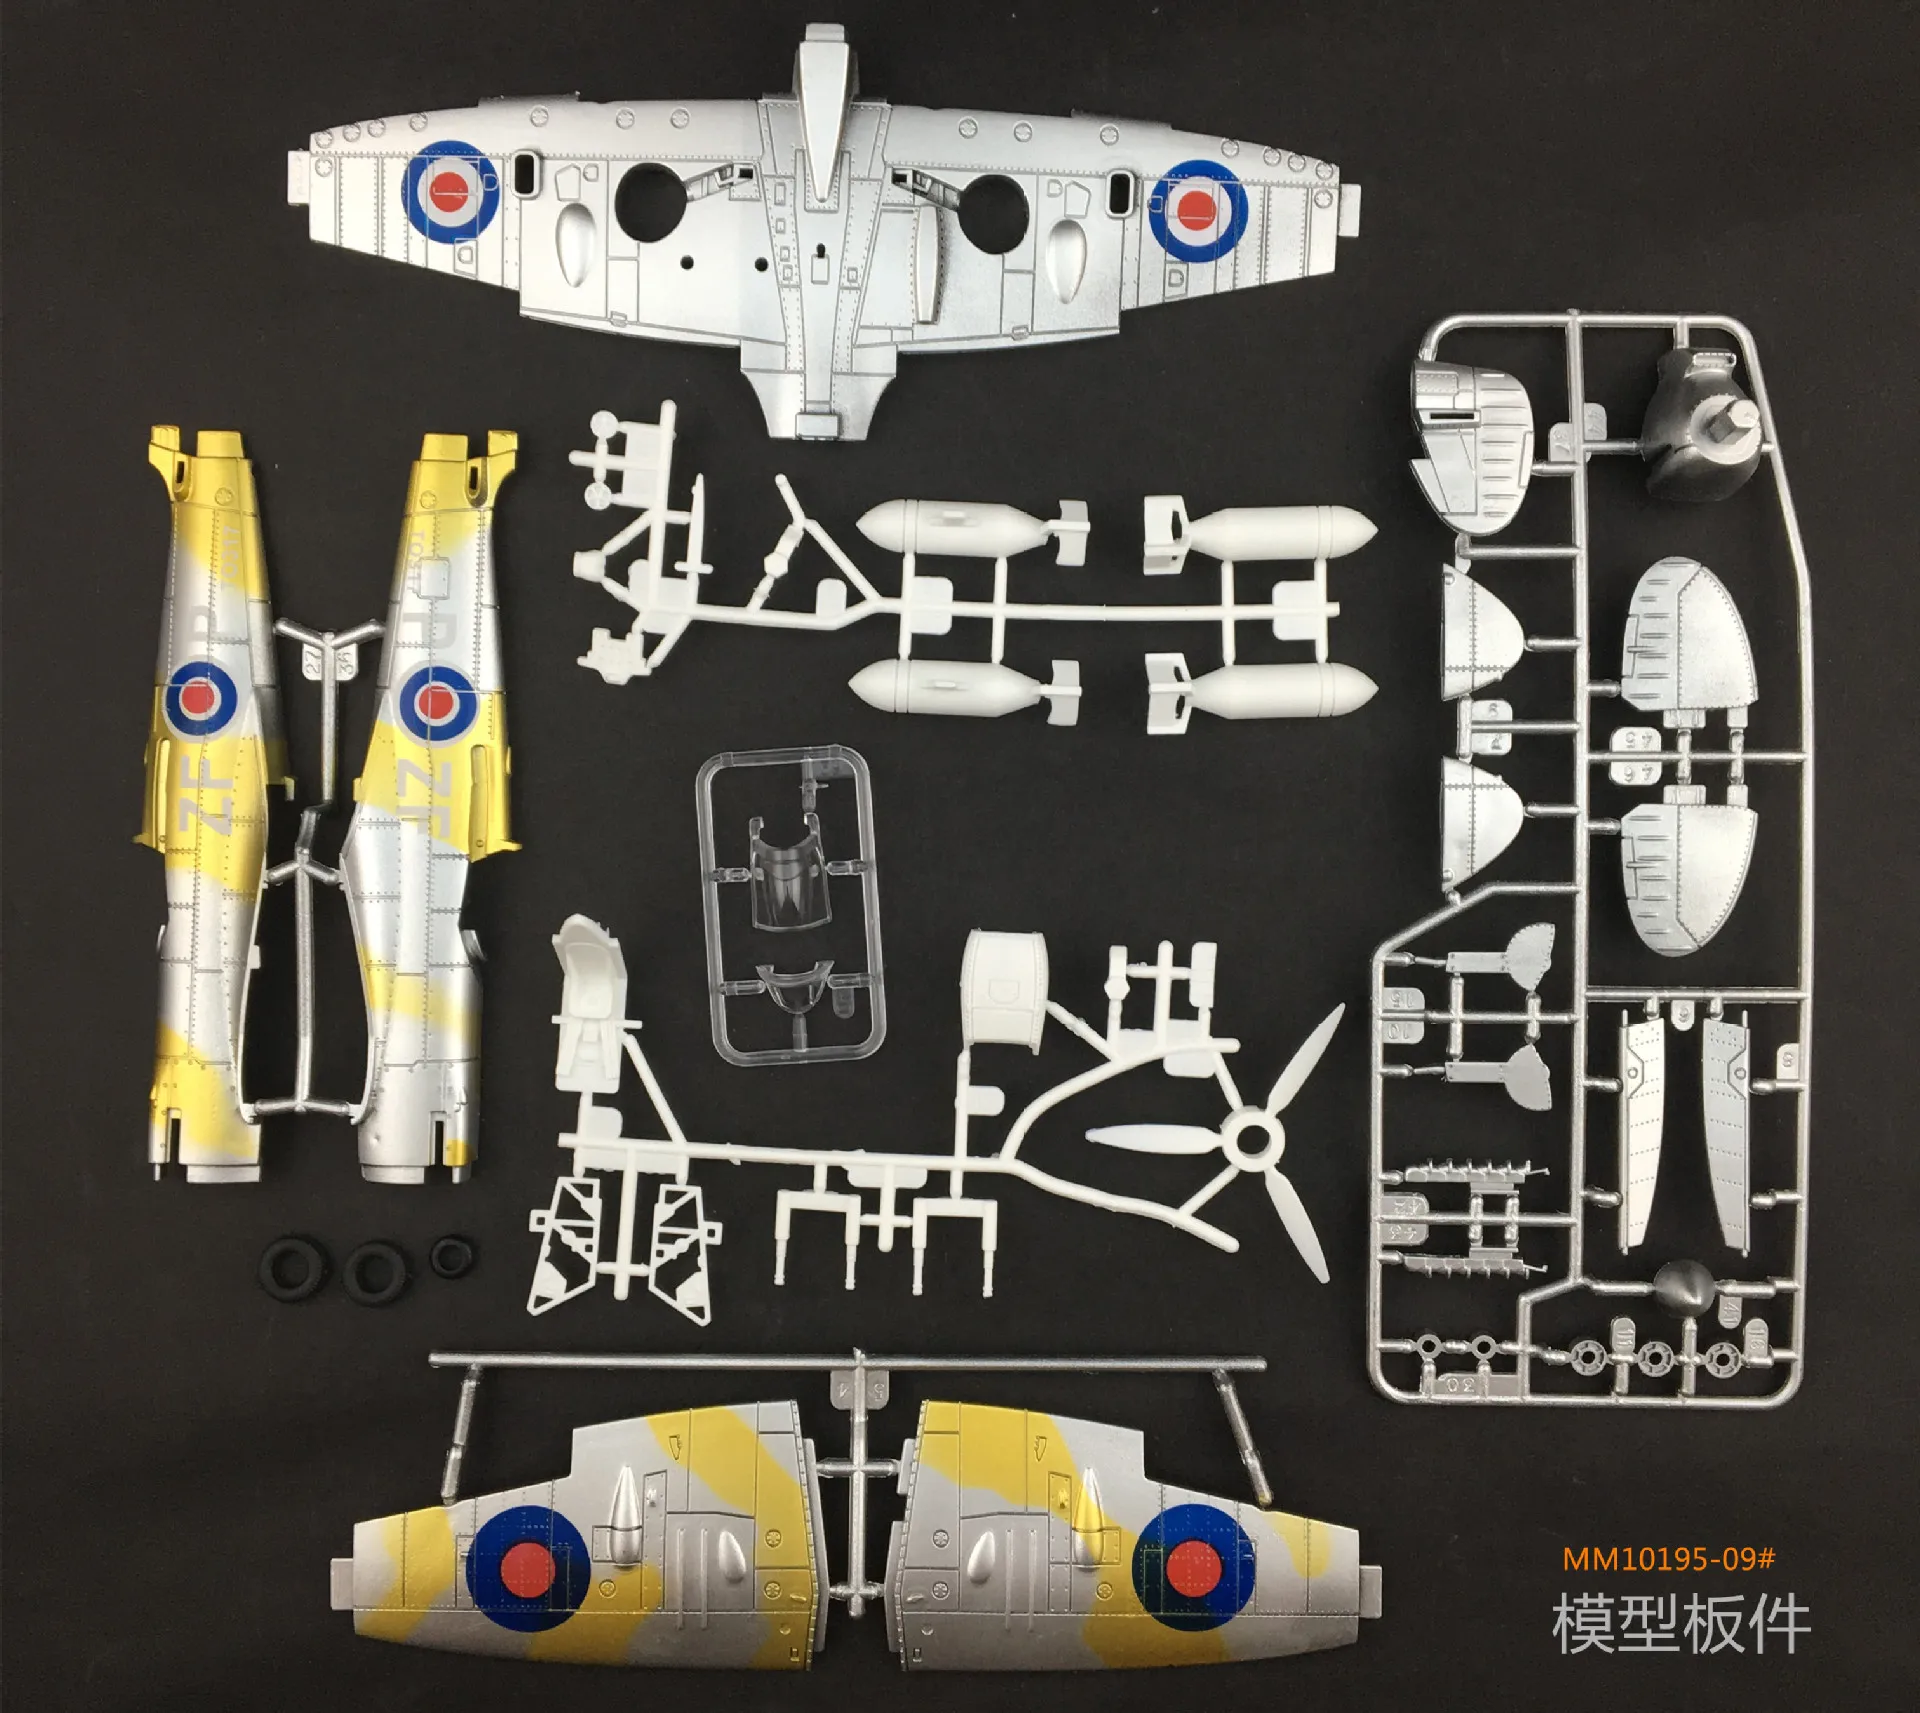 1 шт Случайная 1/48 масштаб War-II Spitfire Сборная модель истребителя, игрушки для строительства самолета литая военная модель для мальчиков